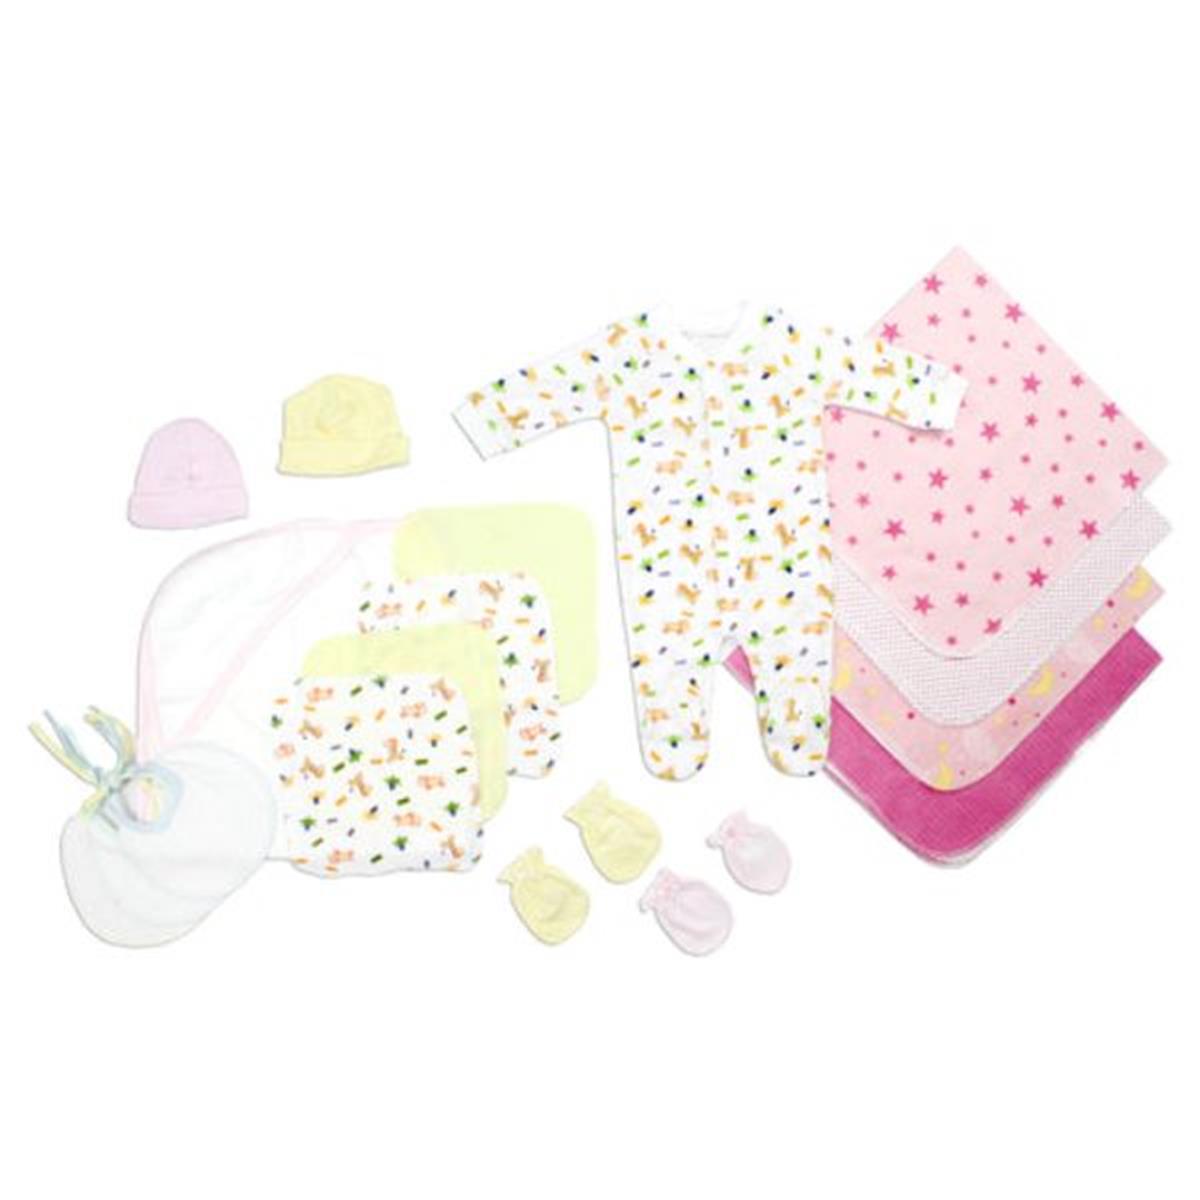 Bambini LS-0103 Newborn Baby Girls Layette Baby Shower Gift Set&#44; White & Pink - Newborn